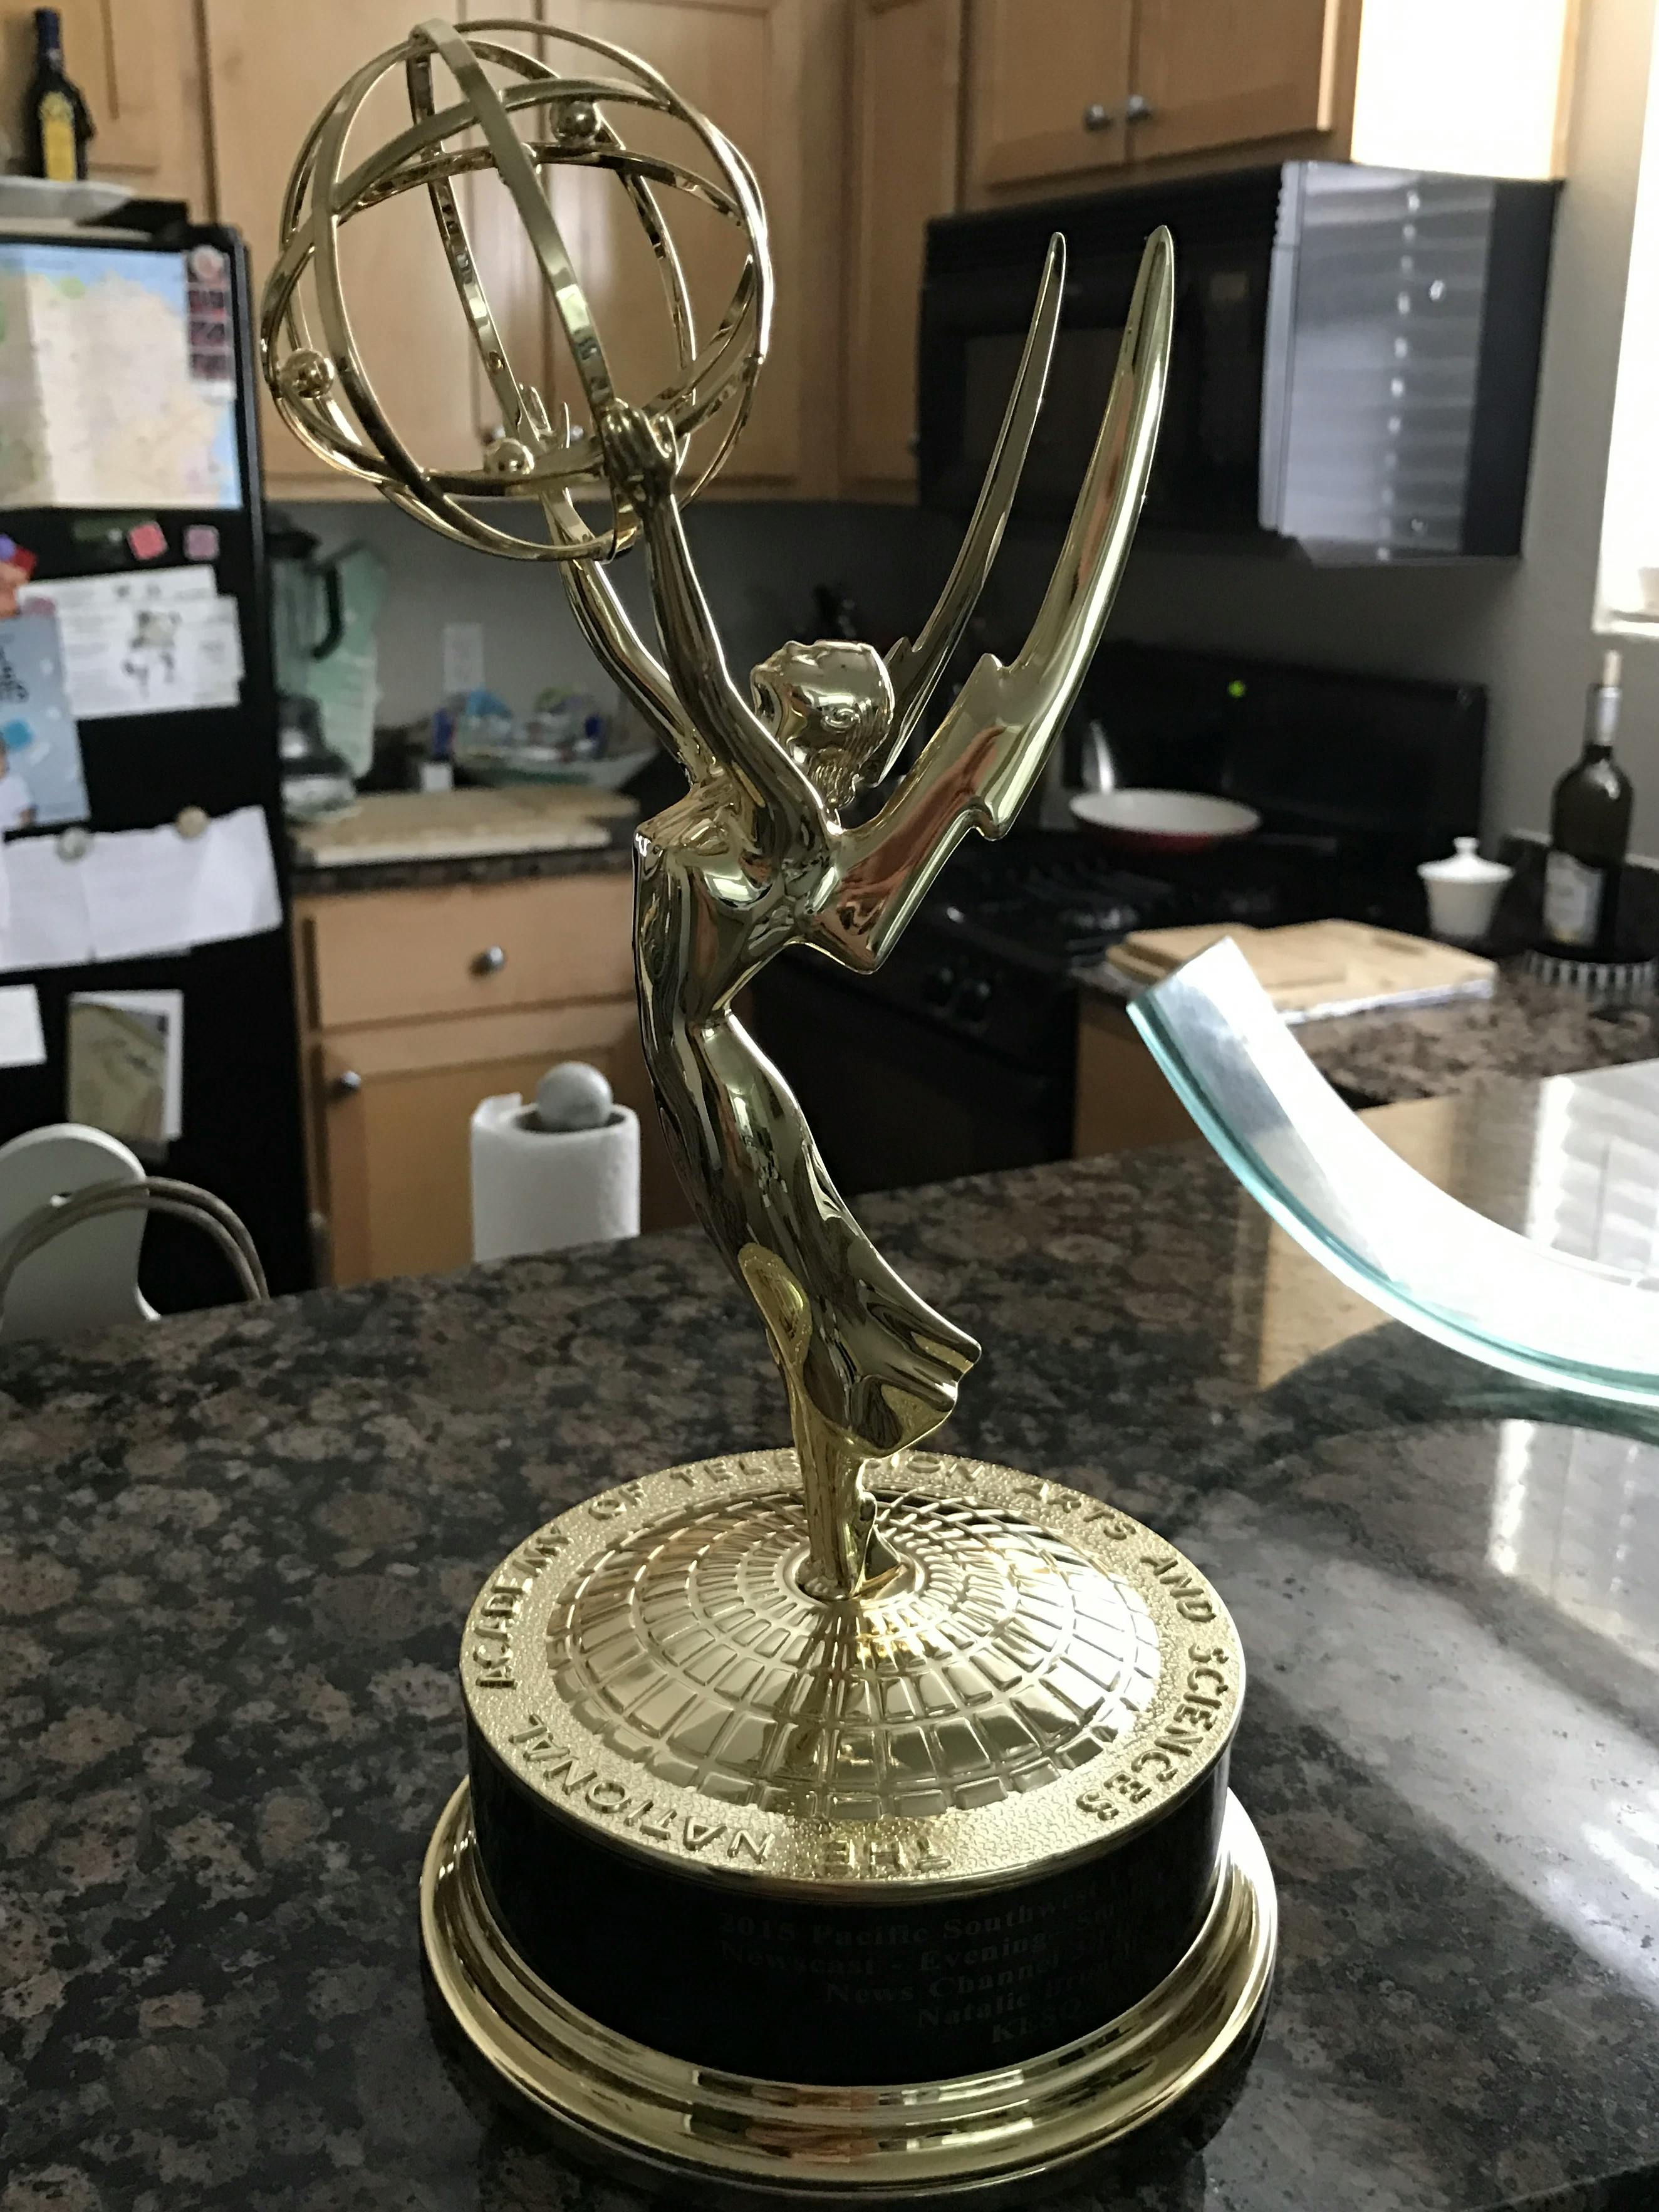 Natalie Brunell's Emmy trophy. Courtesy of Natalie Brunell